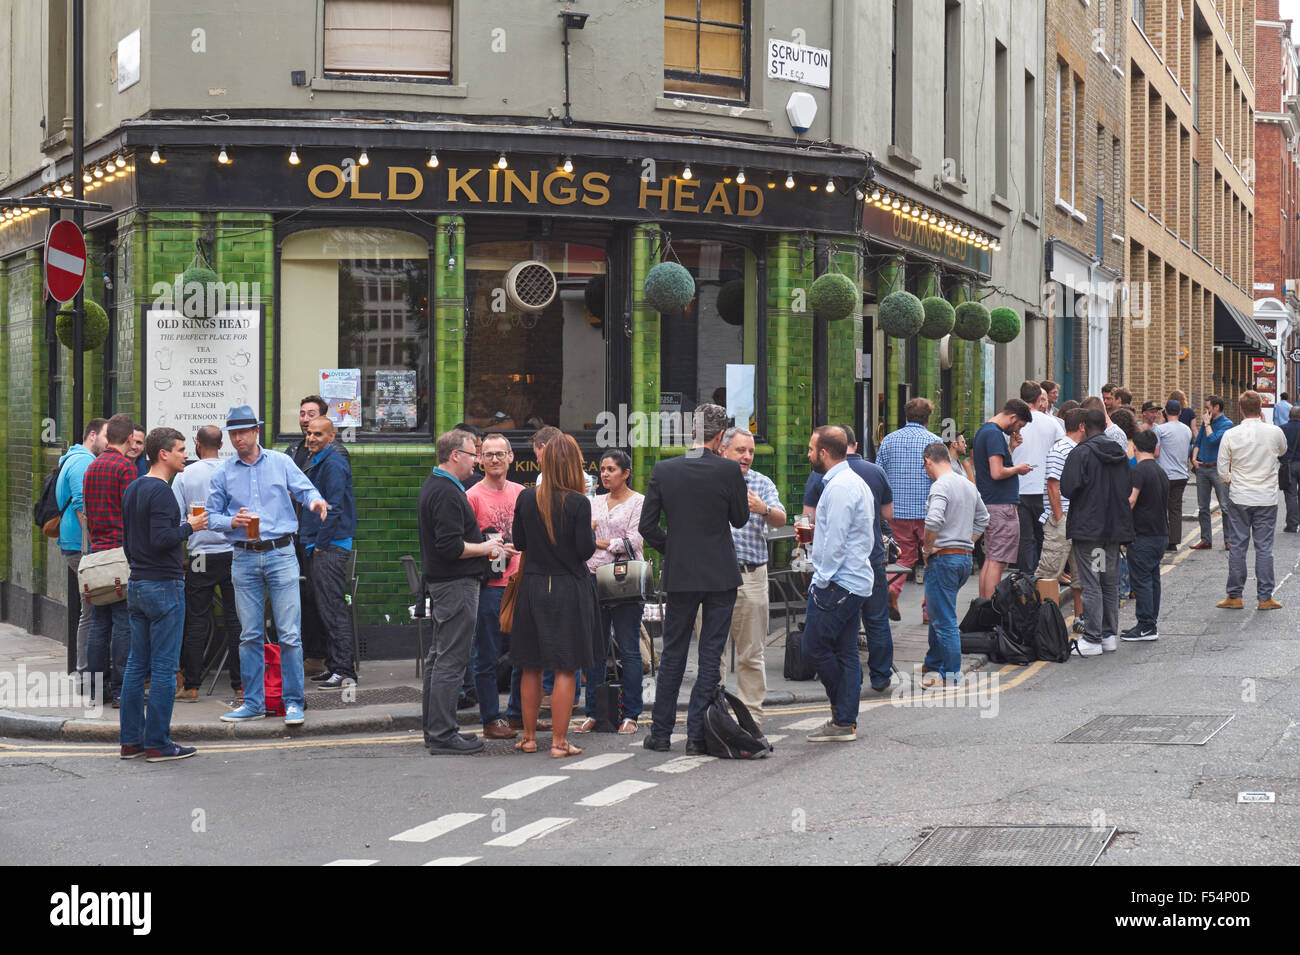 Les personnes qui boivent à l'extérieur de l'ancien Kings Head pub à Londres Angleterre Royaume-Uni UK Banque D'Images